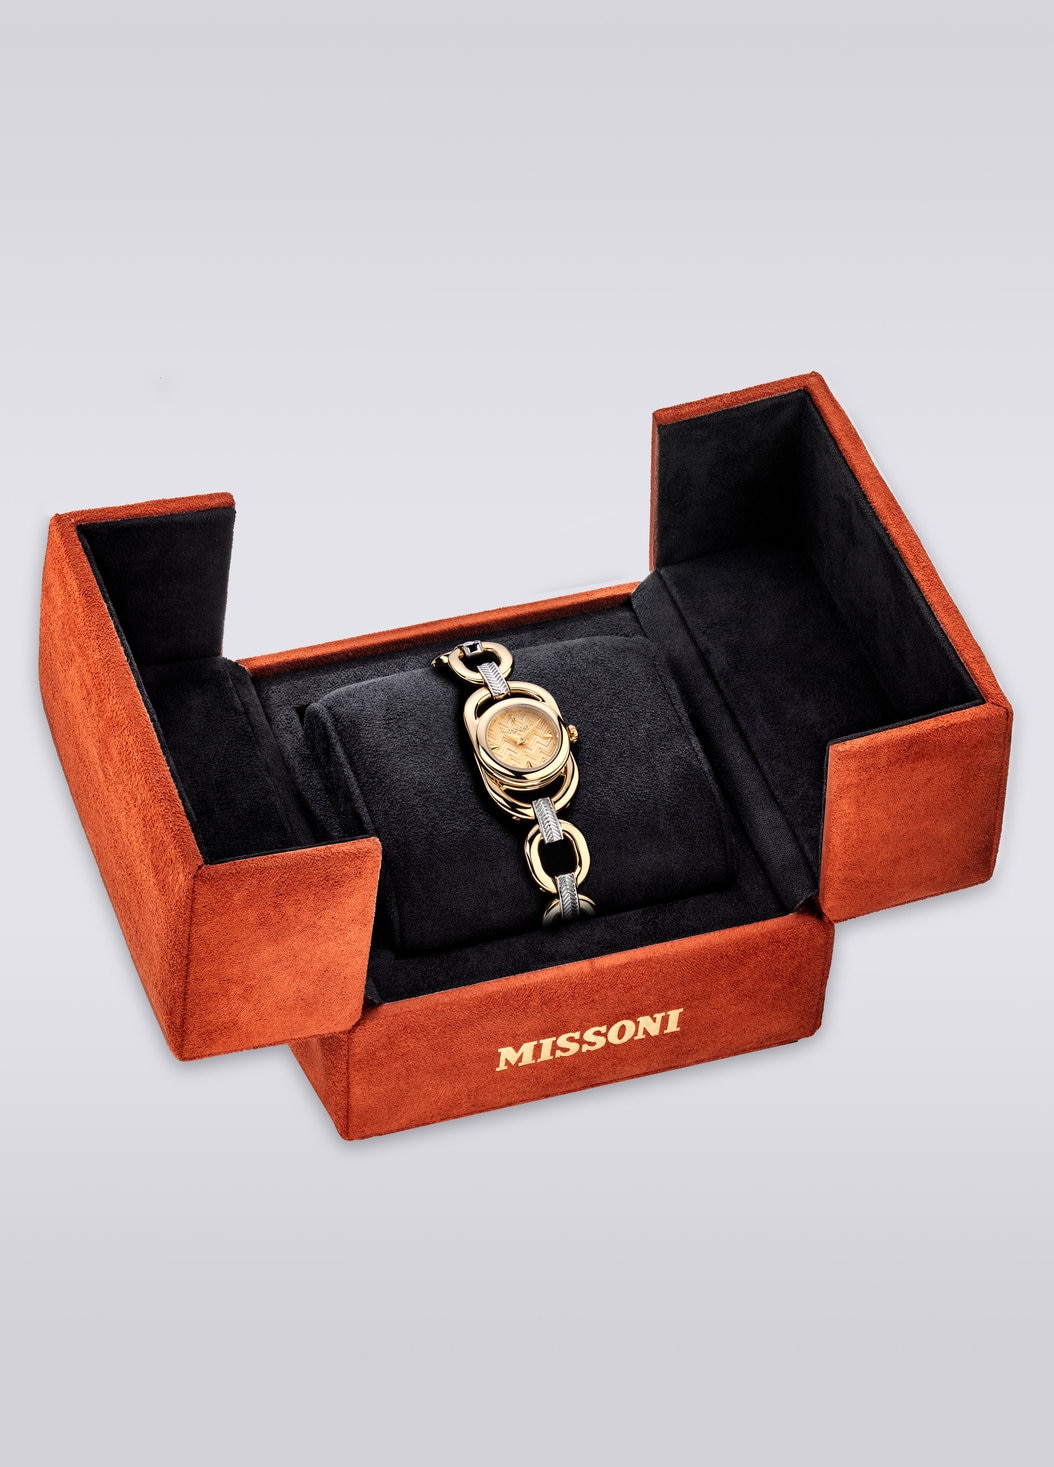 Missoni Gioiello Chain 22,8 MM case size watch, Multicoloured  - 8053147046198 - 4